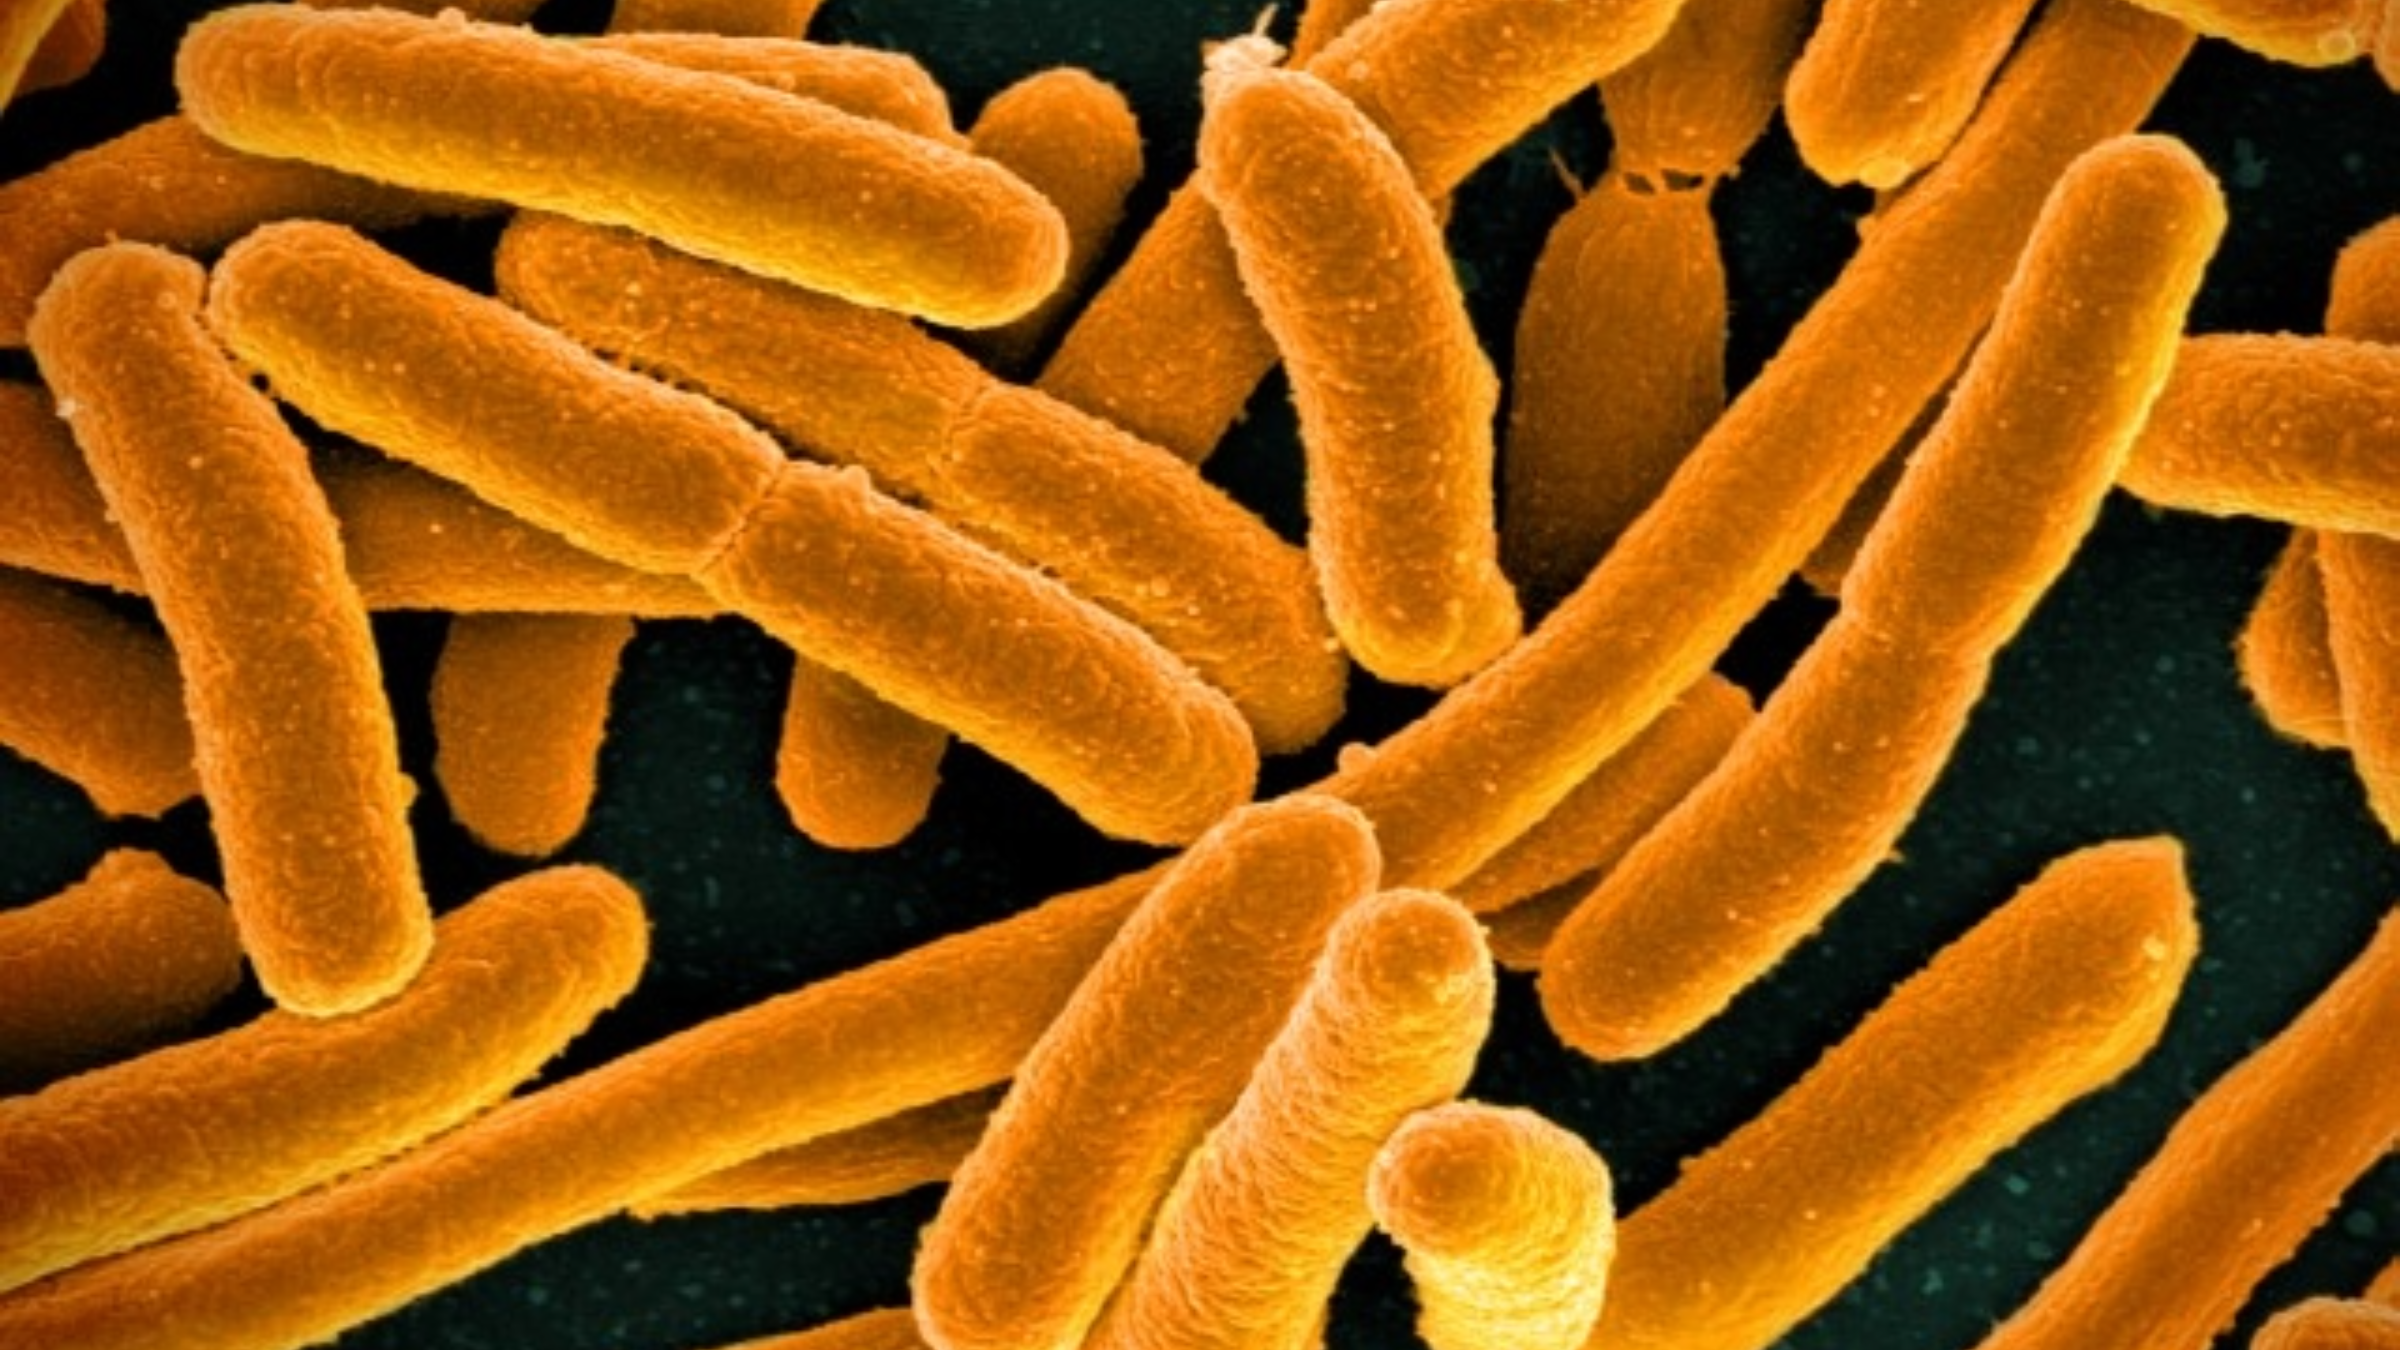 E.coli bacteria microscopic image